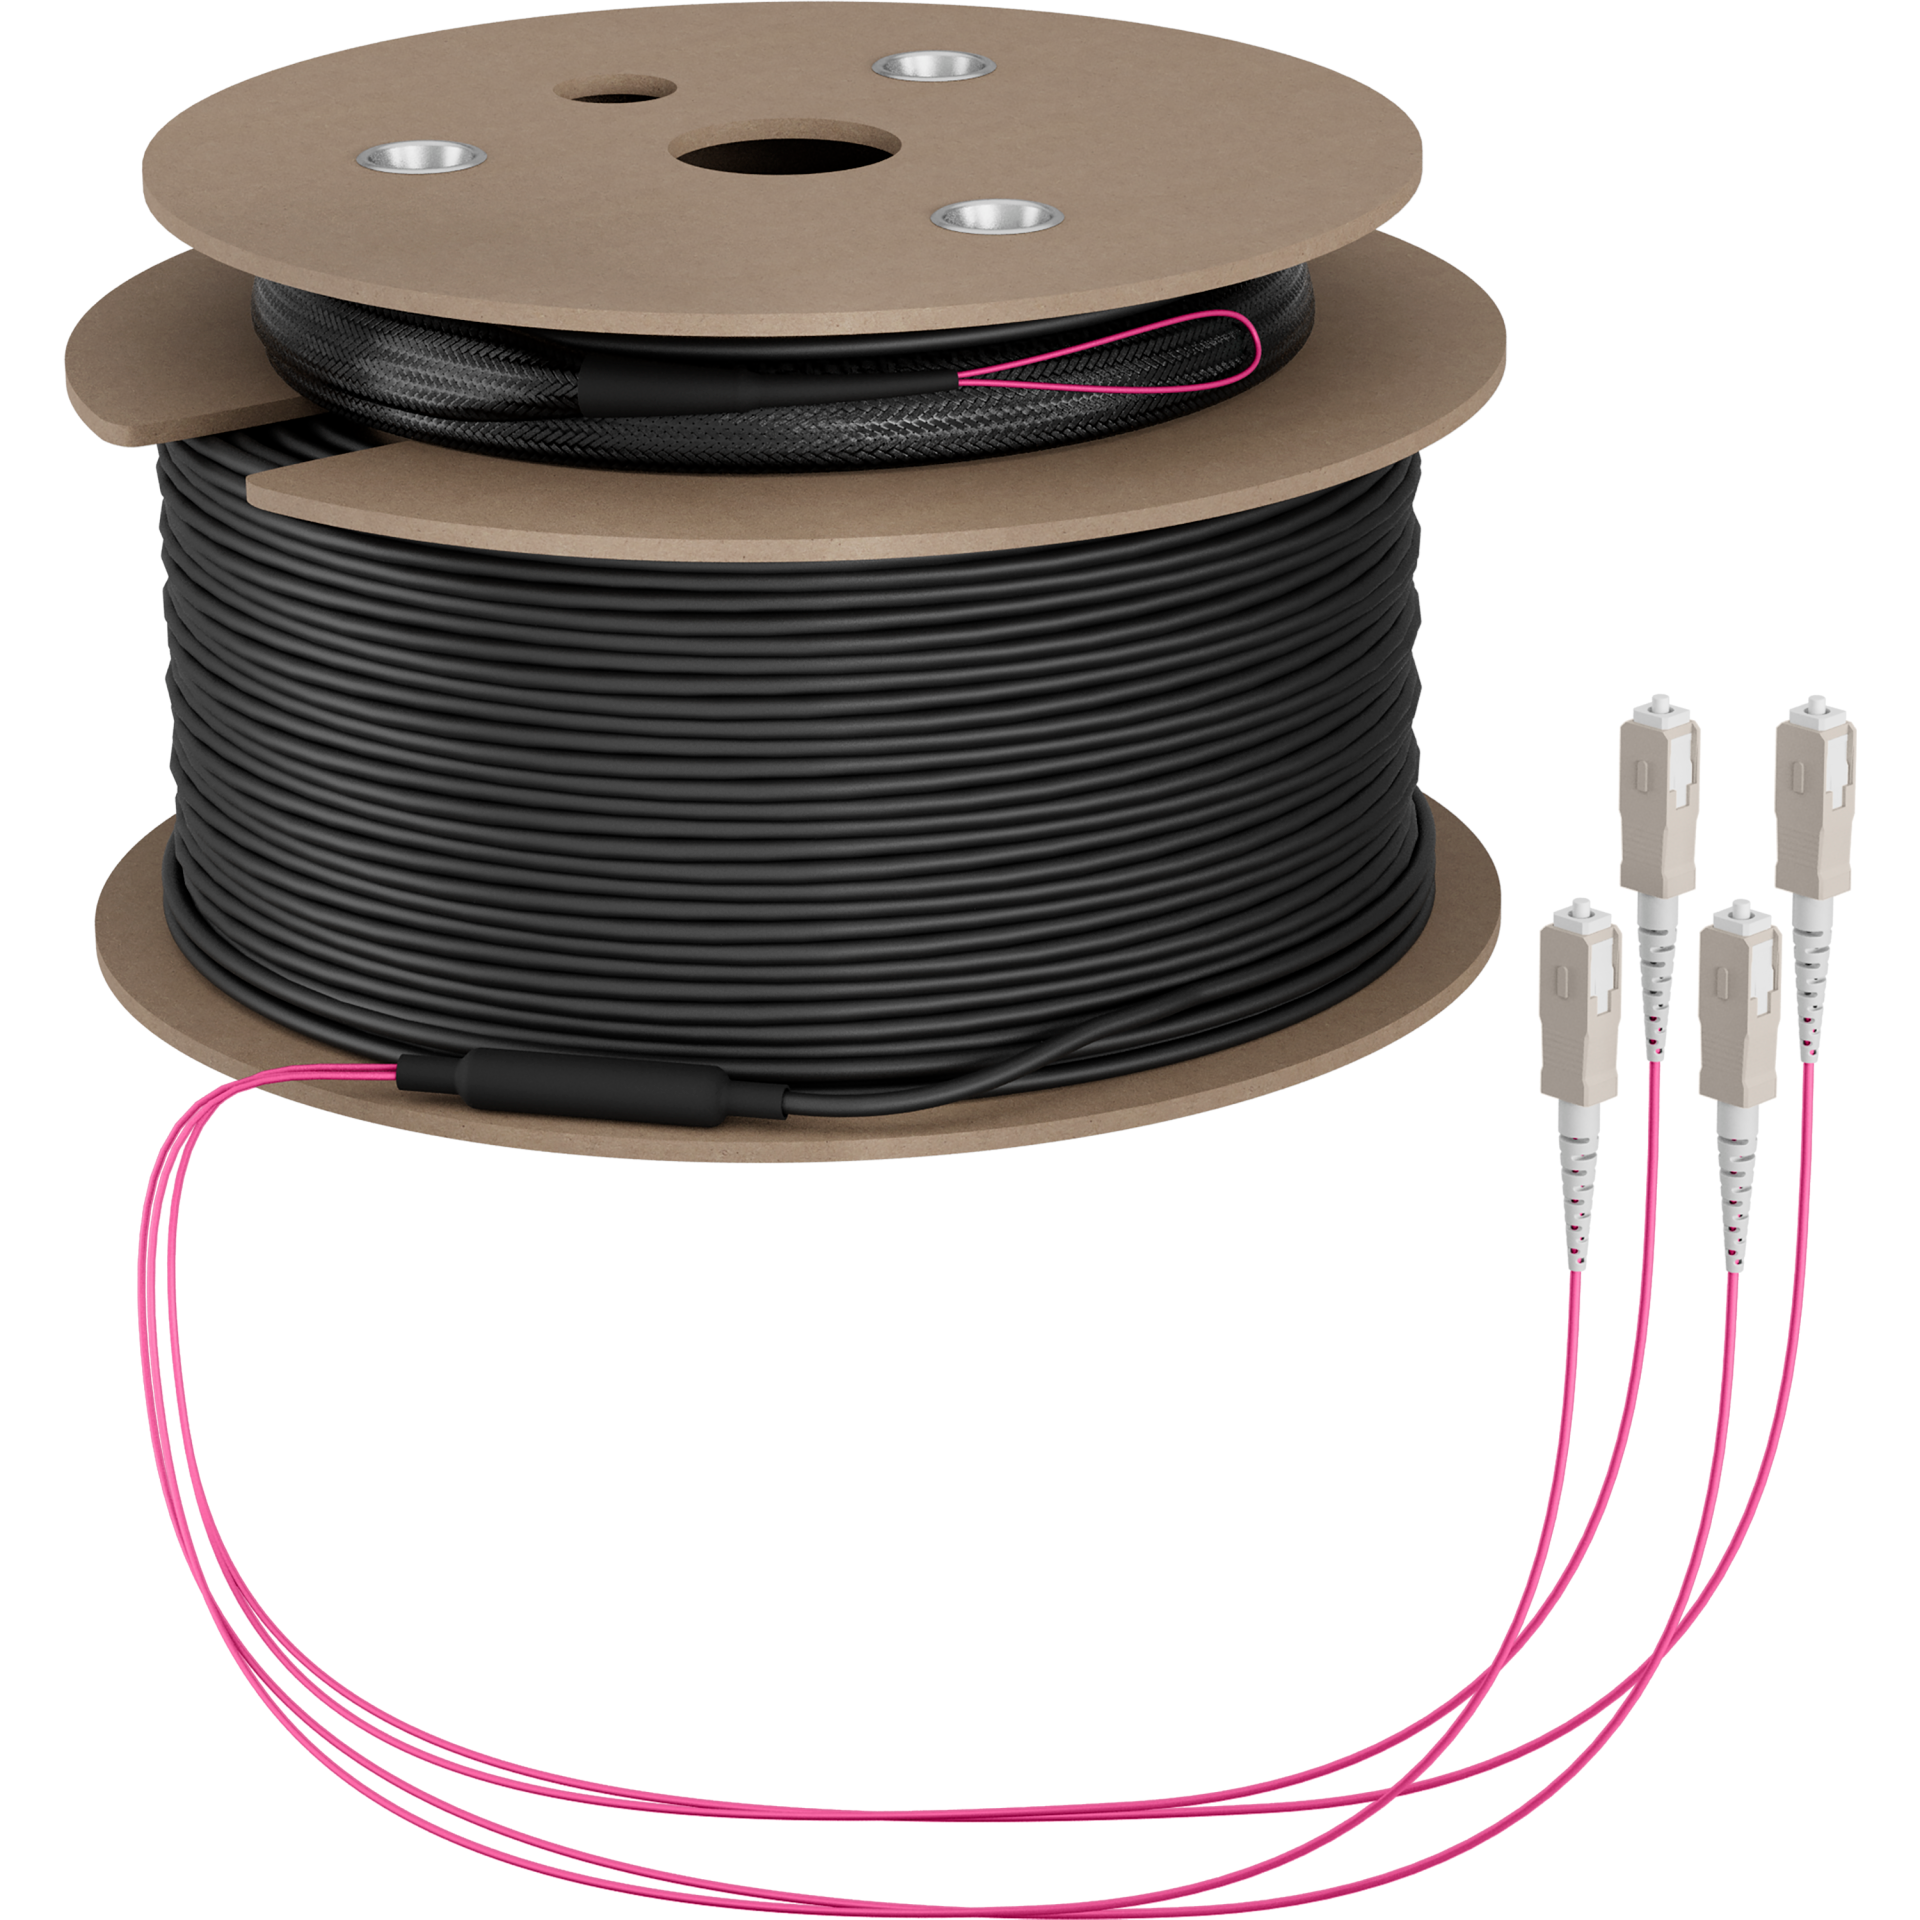 Trunk cable U-DQ(ZN)BH OM4 4G (1x4) SC-SC,120m Dca LSZH